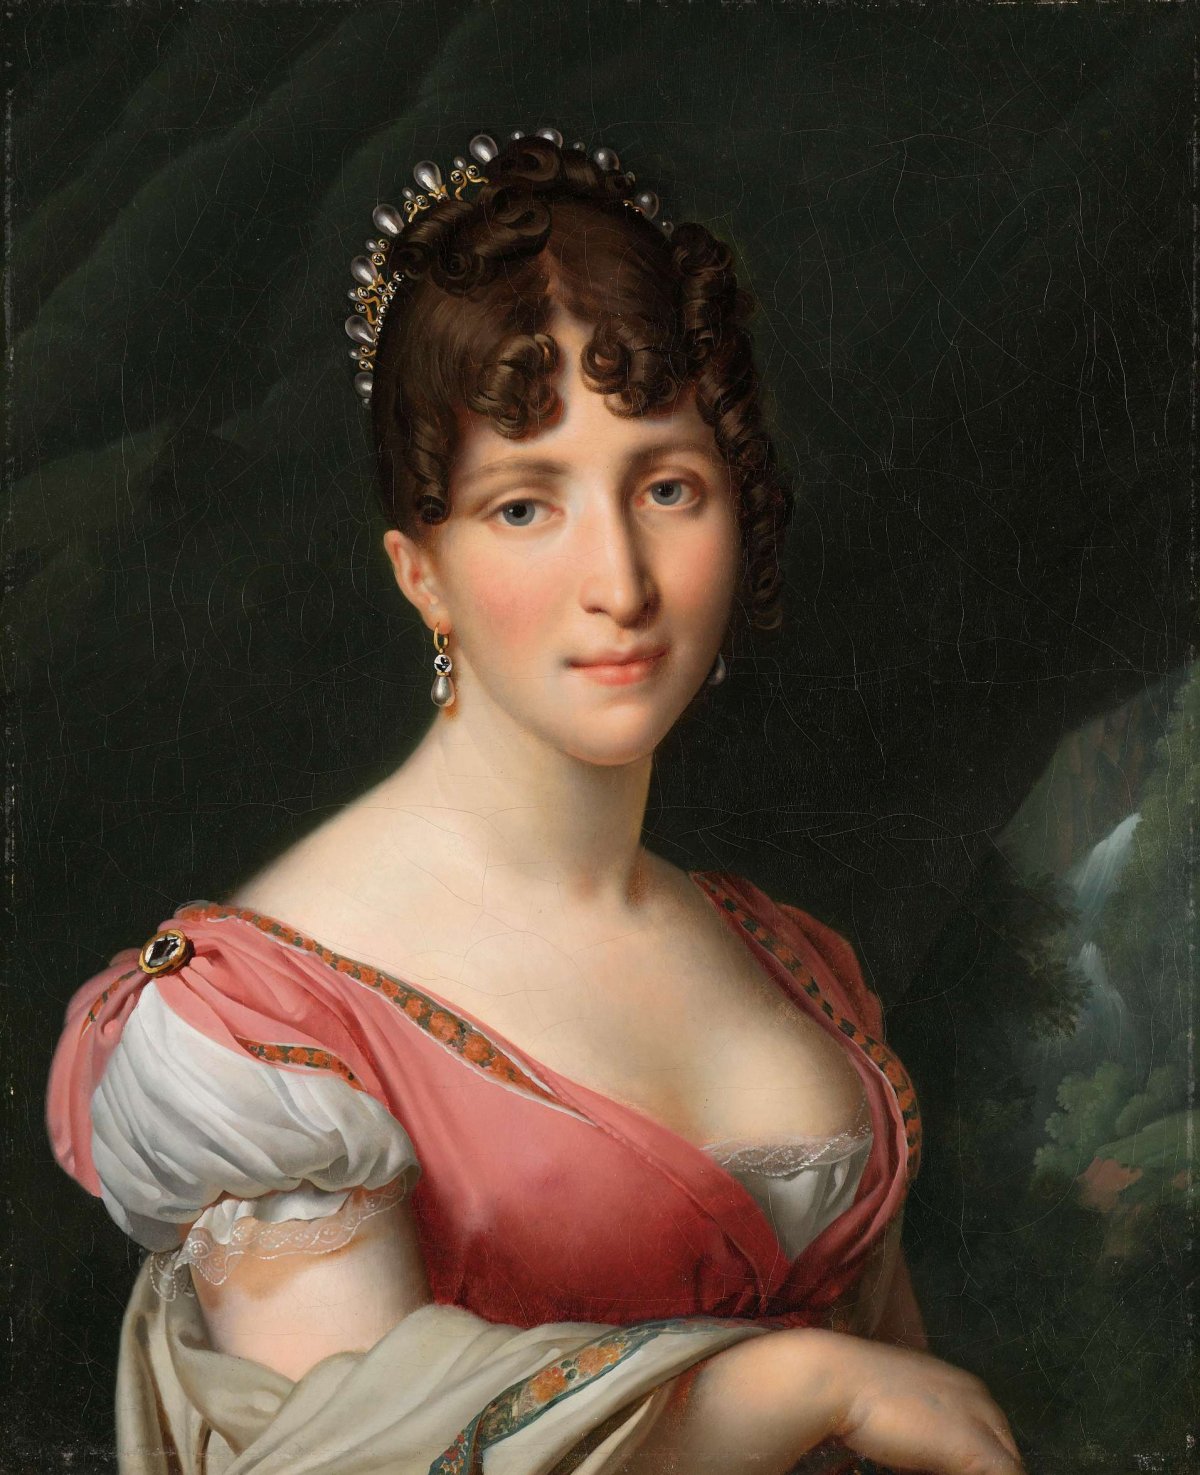 Portrait of Hortense de Beauharnais, Anne-Louis Girodet-Trioson, c. 1805 - c. 1809